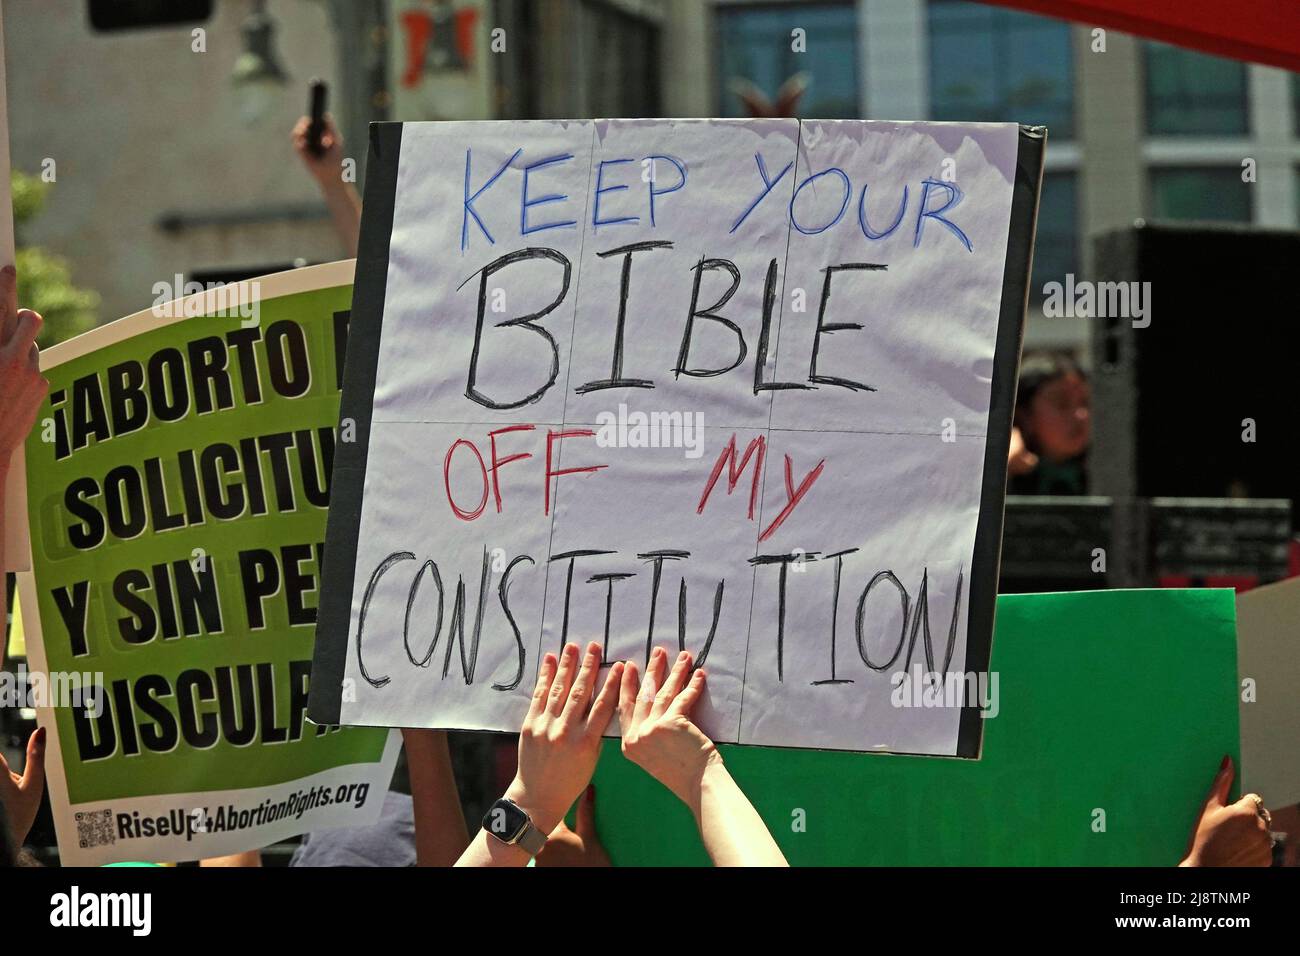 Los Angeles, CA / USA - 14 de mayo de 2022: Una señal dice “MANTENGA SU BIBLIA FUERA DE MI CONSTITUCIÓN” en una marcha que apoya los derechos reproductivos de las mujeres. Foto de stock